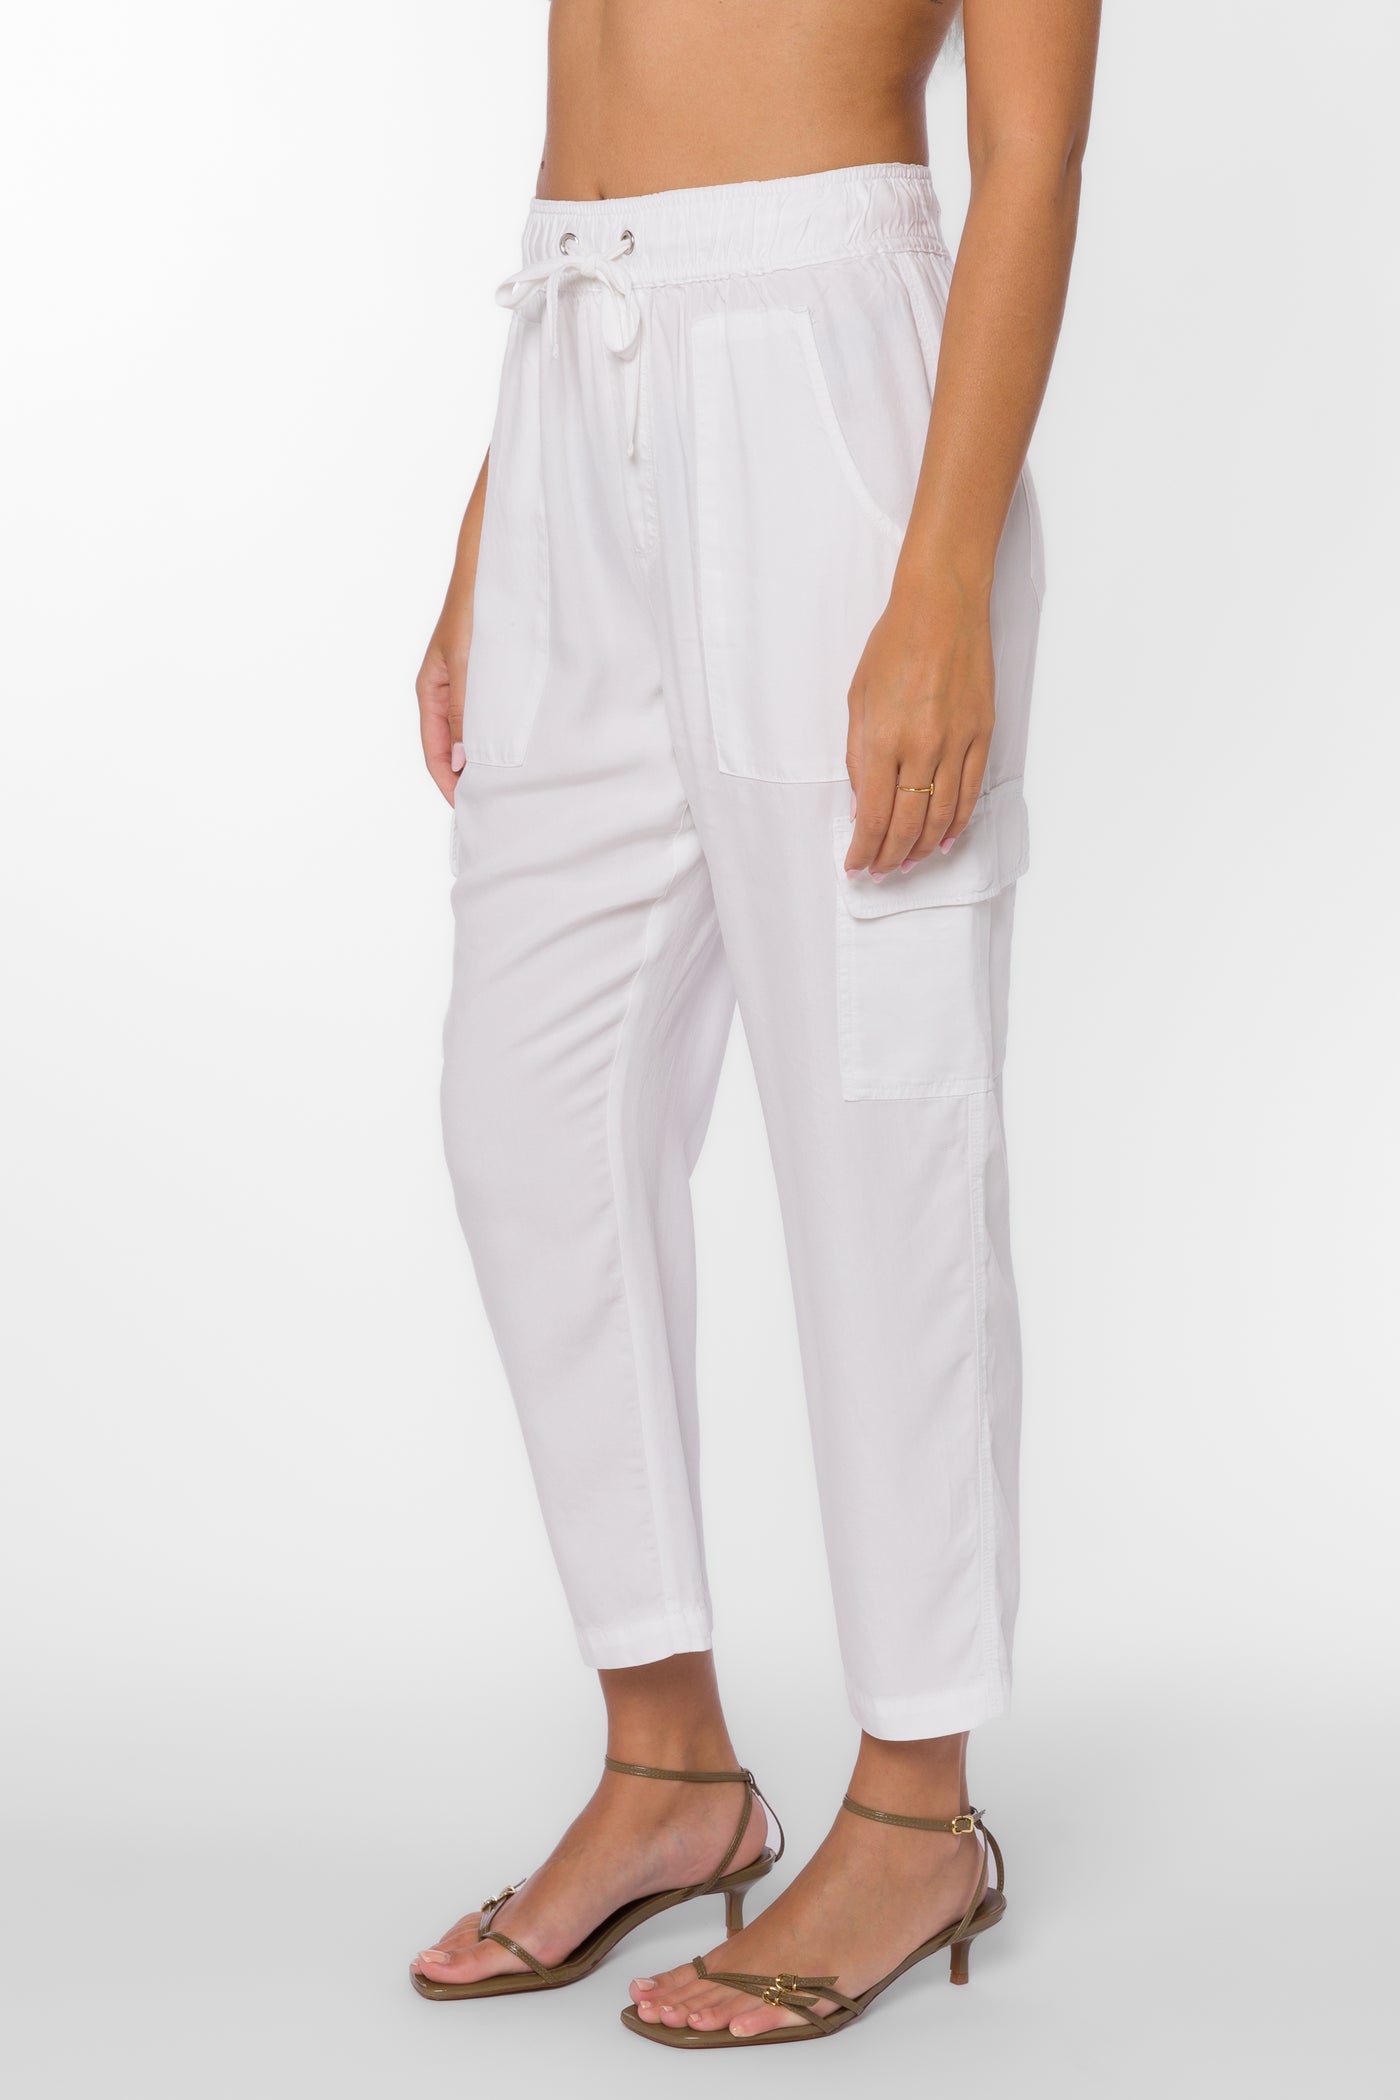 Lunay White Pants - Bottoms - Velvet Heart Clothing